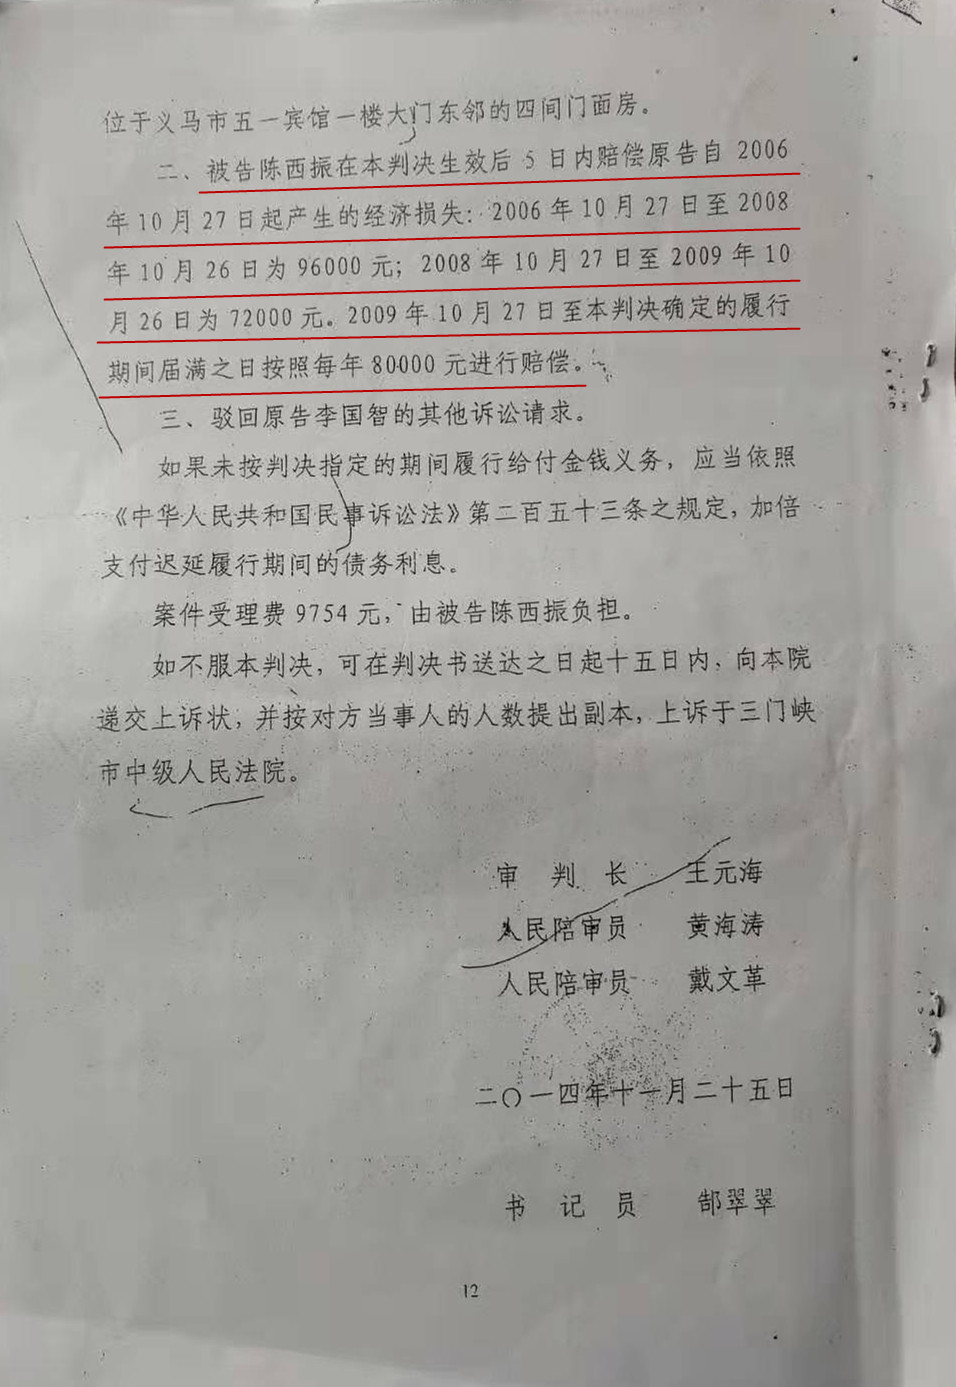 河南三门峡:义马一租户租房13年不交房租 